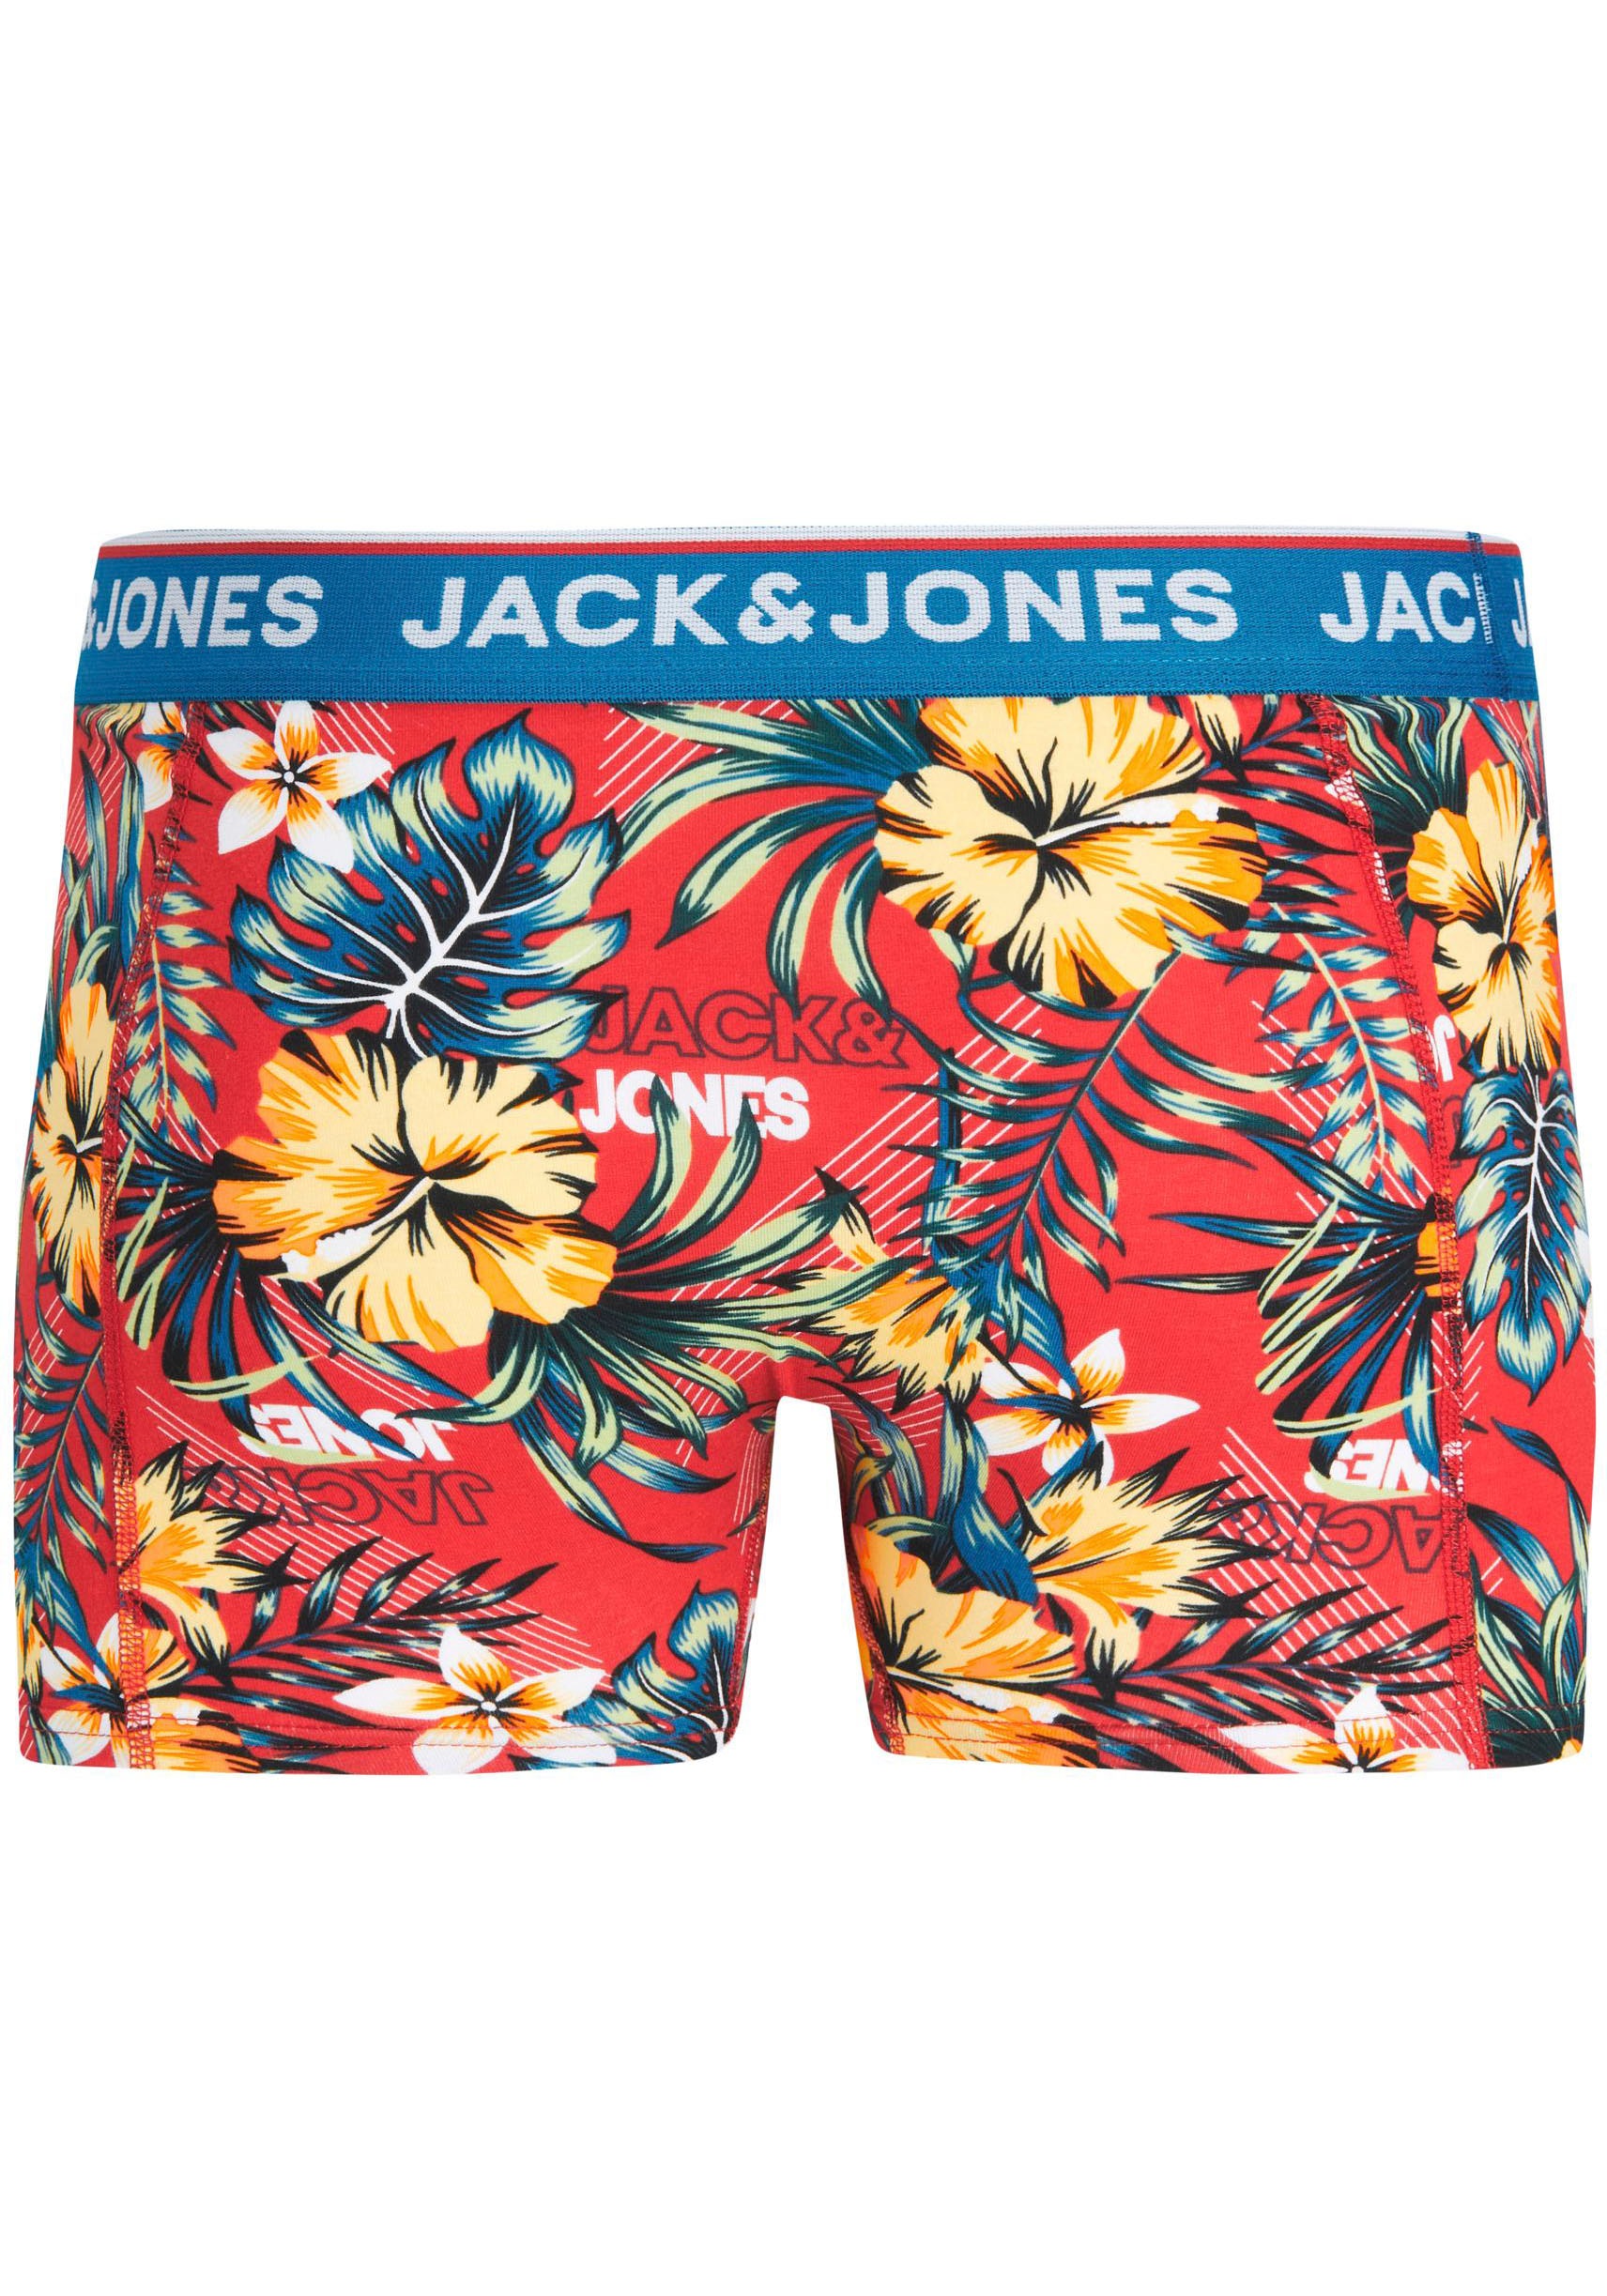 »JACAZORES Trouver 3 JNR«, NOOS 3 Junior Boxershorts PACK sur & TRUNKS Jack (Packung, Jones St.)